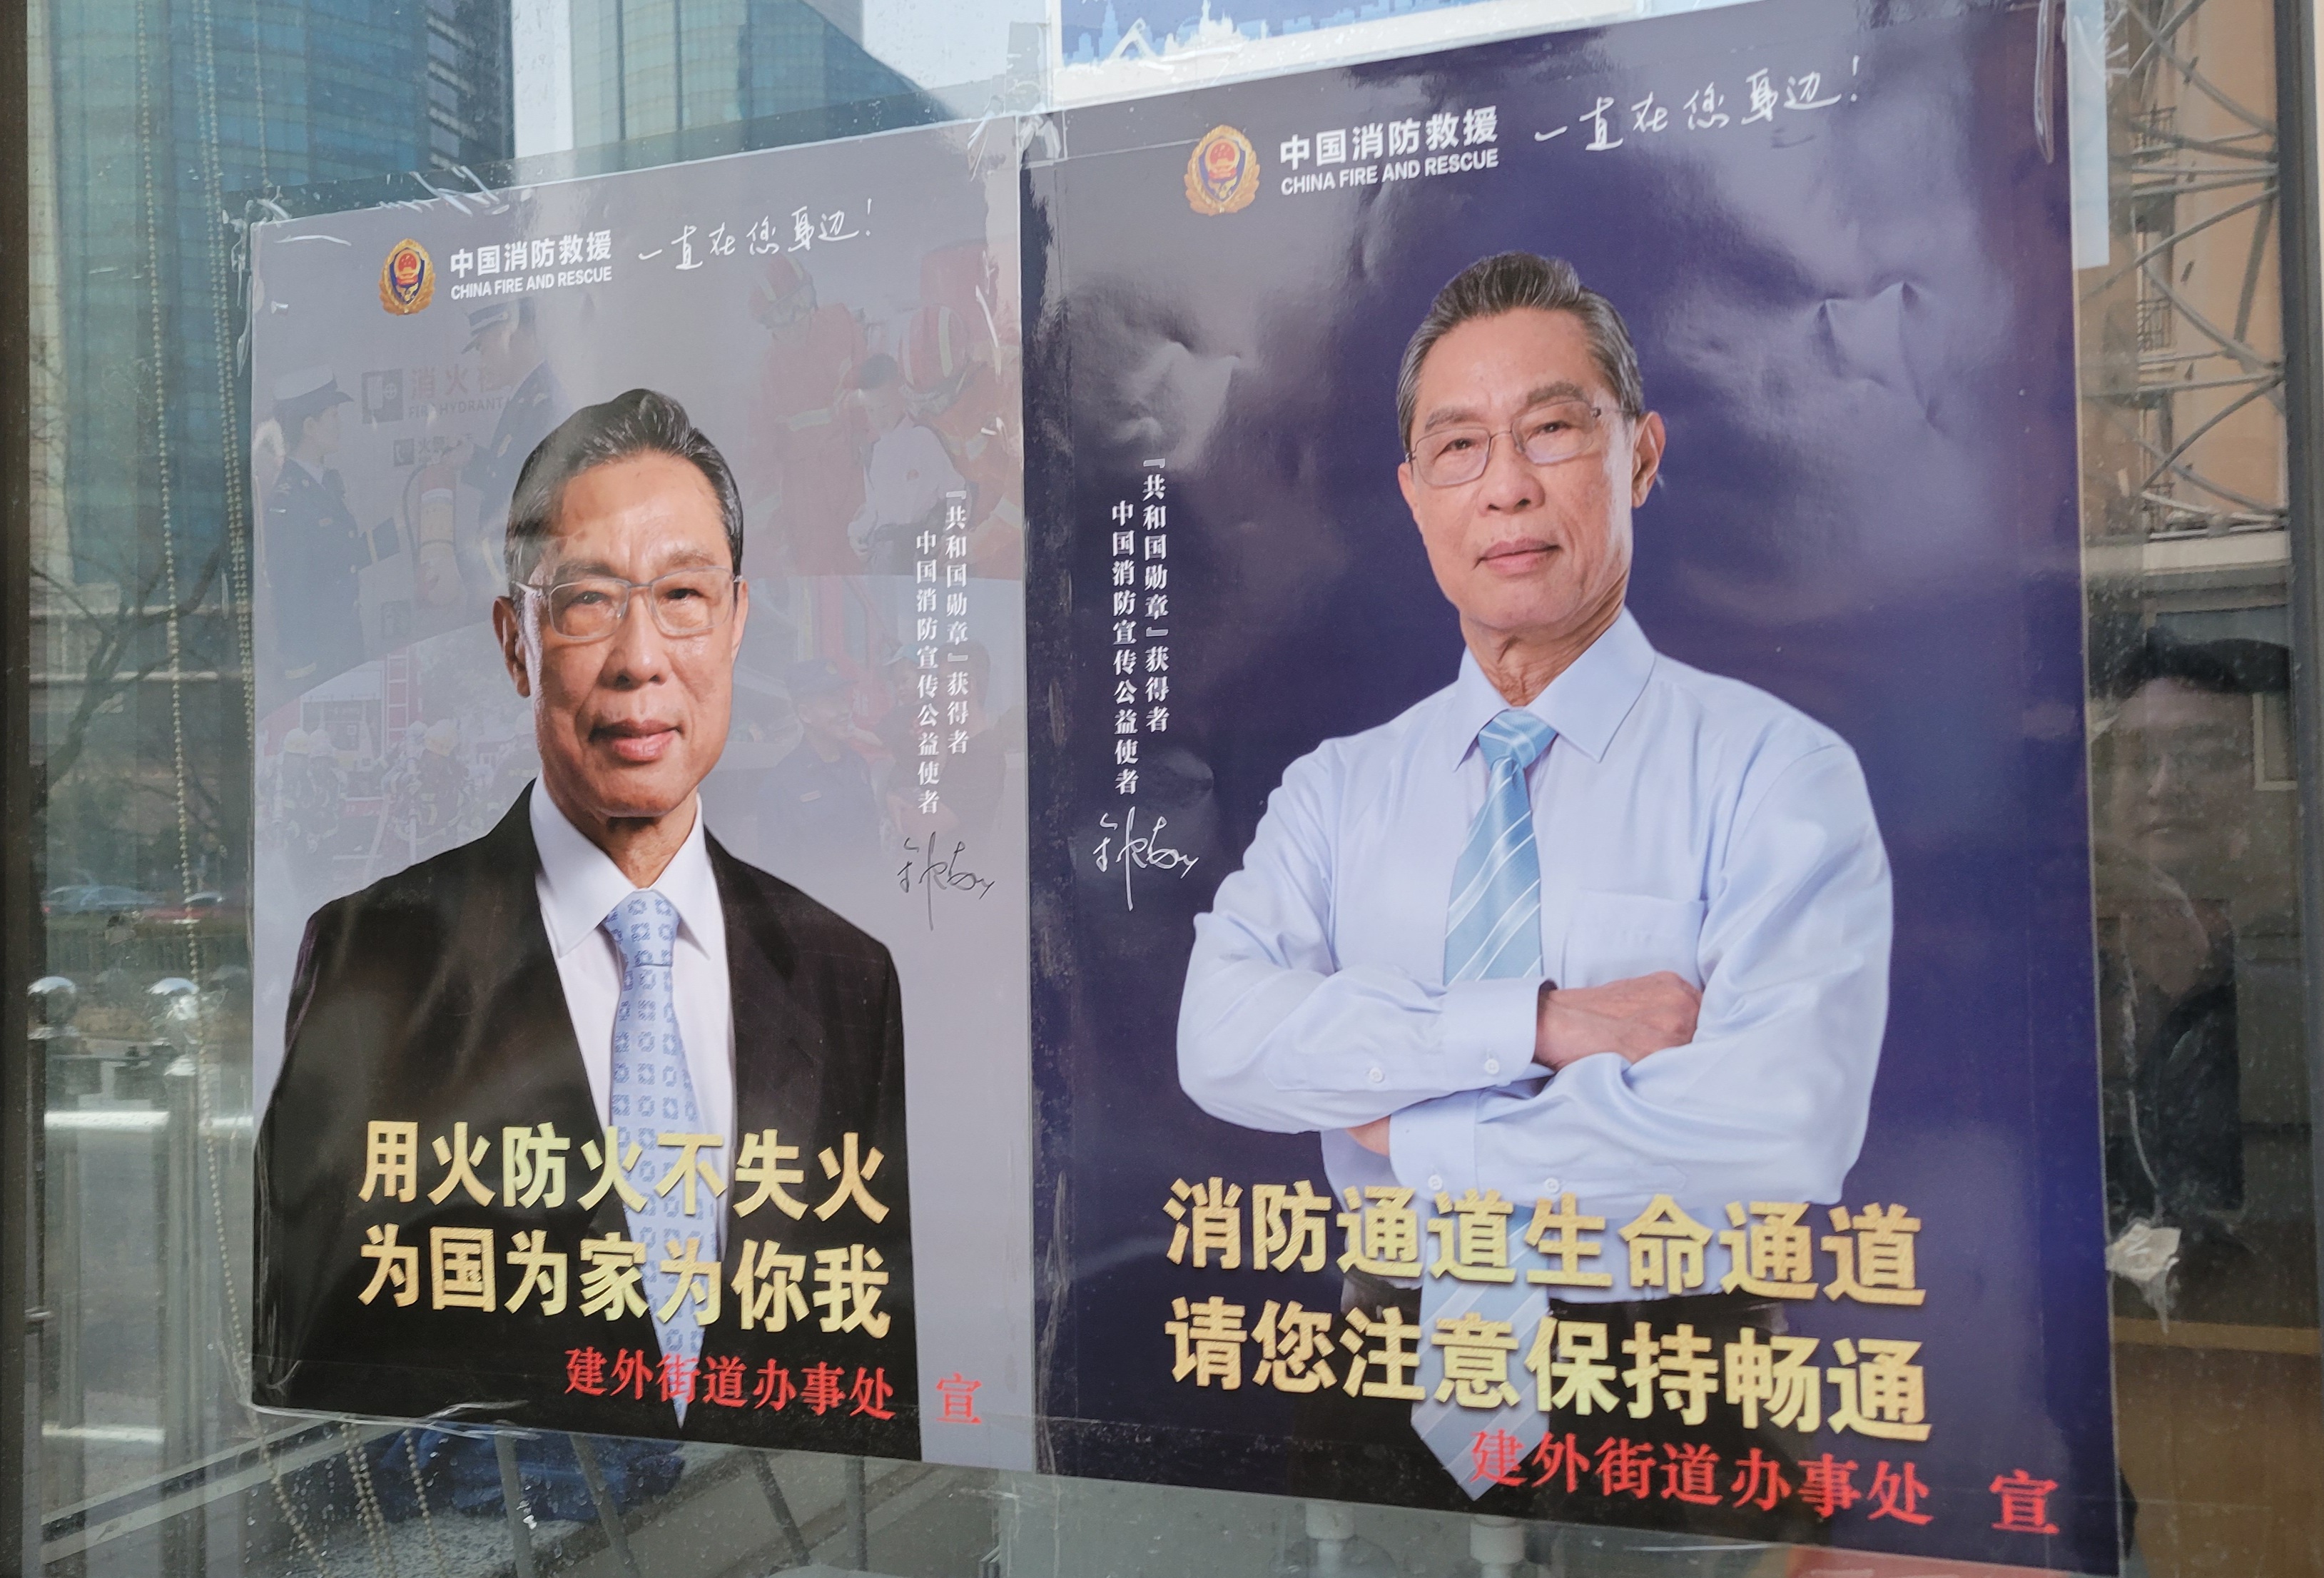 최근 중국 길거리 곳곳에서 볼 수 있는 중난산 사진을 활용한 포스터. 실화에 조심하고(왼쪽) 소방도로를 확보하라는(오른쪽) 내용이다. 코로나19 권위자로서 중난산의 권위를 겨울철 불조심을 위한 홍보에 활용했다.(사진 조성원 기자)